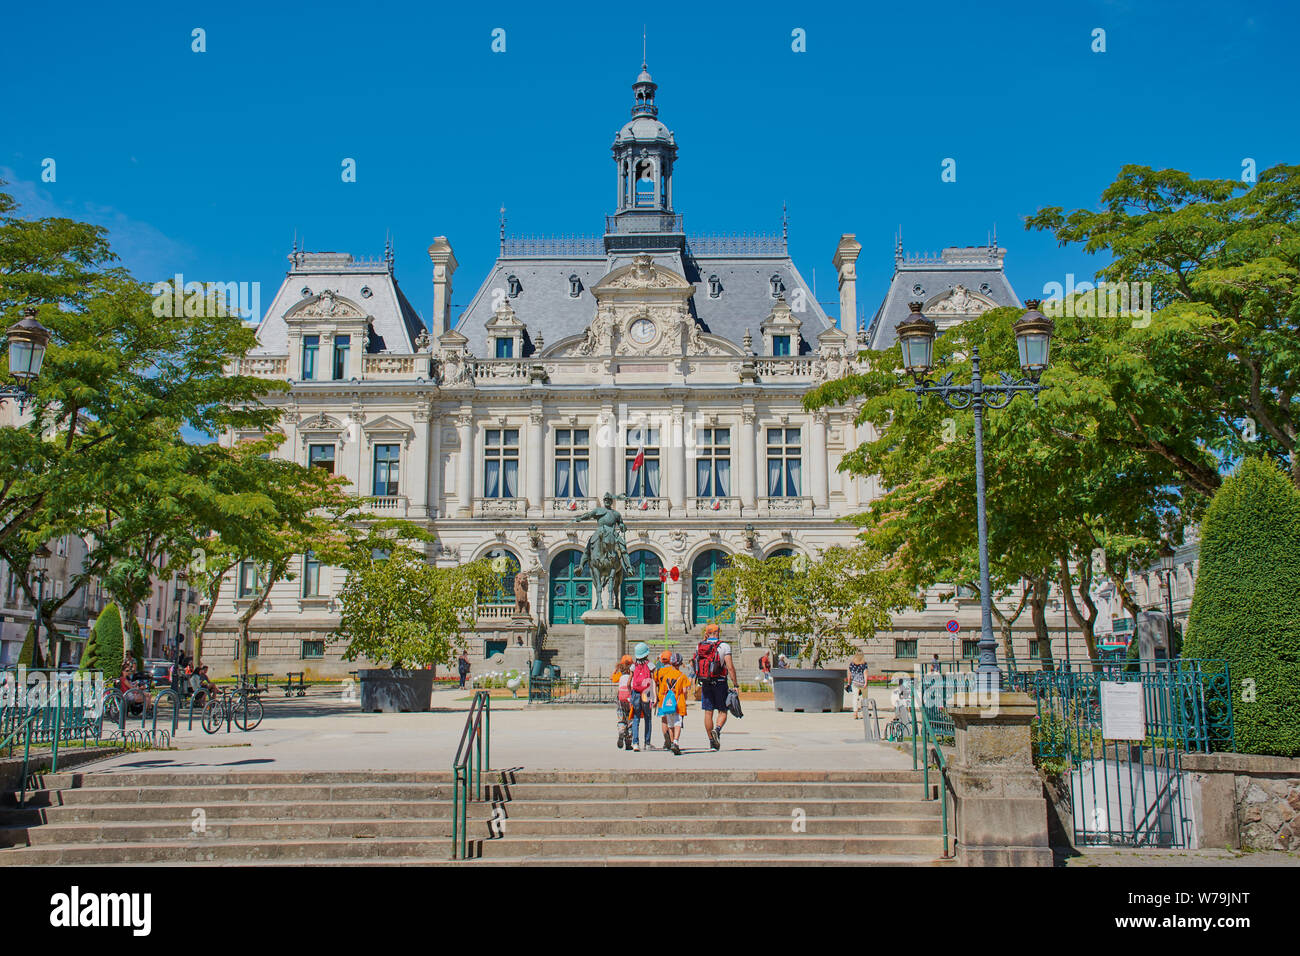 Vannes, Bretagne, Frankreich - Juli 11, 2019: Das historische Rathaus von Vannes, zwischen 1880 und 1886 gebaut. Vannes ist eine Stadt in der Bretagne, Frankreich. Stockfoto